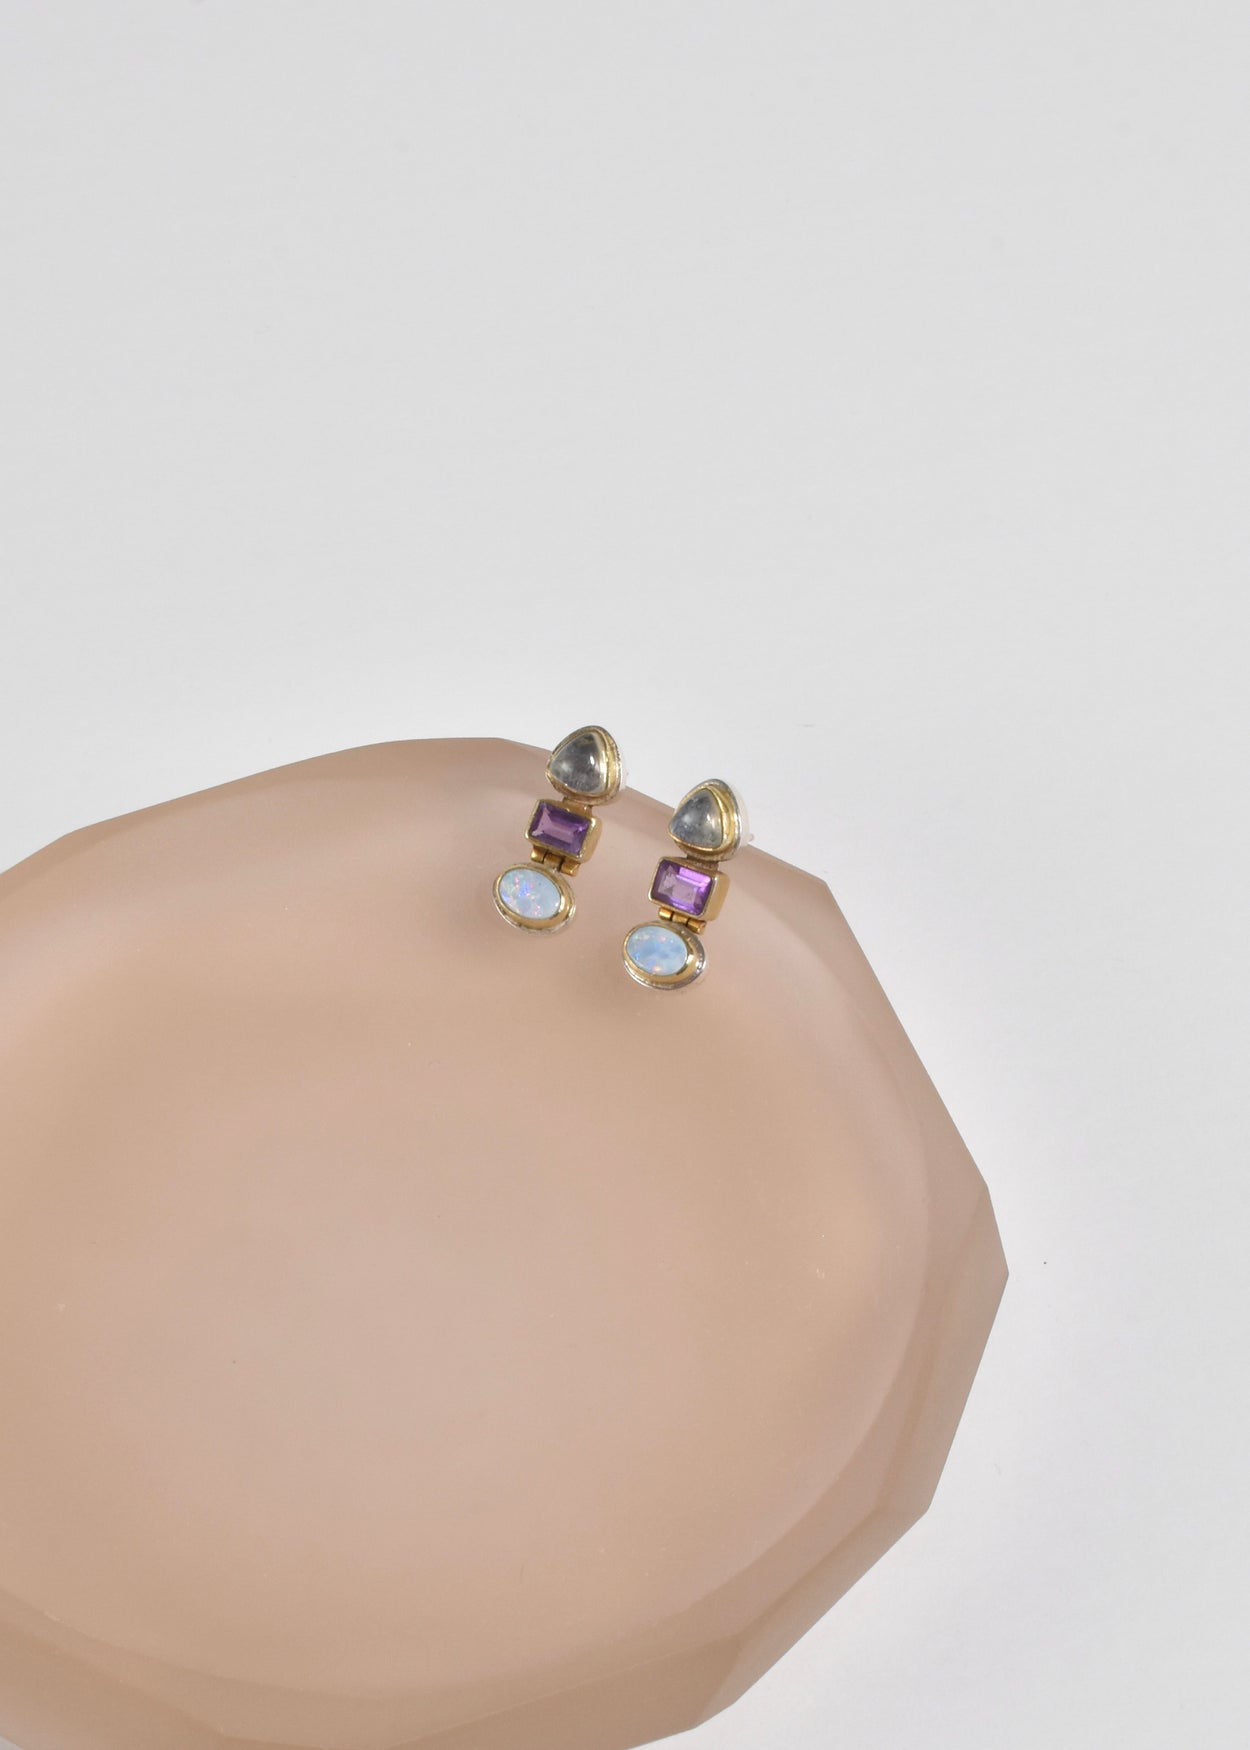 Moonstone Opal Amethyst Earrings